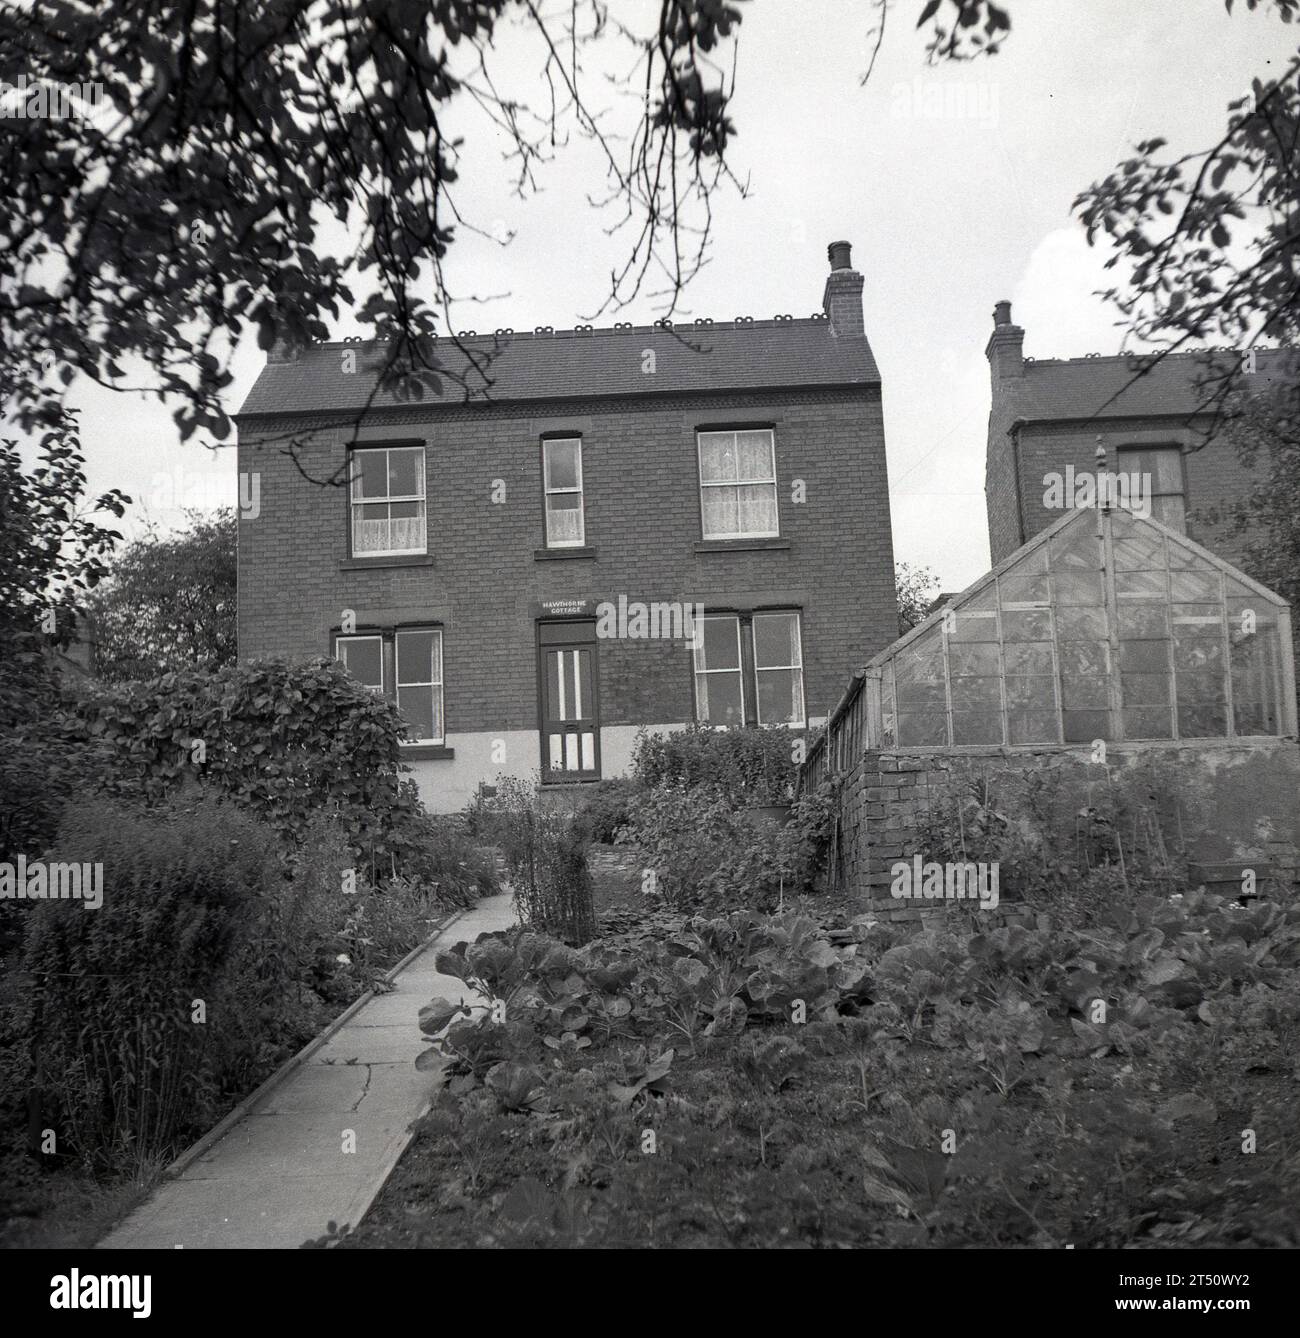 1950a, historique, vue d'une maison victorienne indépendante à façade plate construite en briques, sur une crête, serre dans le jardin, Oldham, Angleterre, ROYAUME-UNI. Nom sur porte, Hawthorne Cottage. Banque D'Images